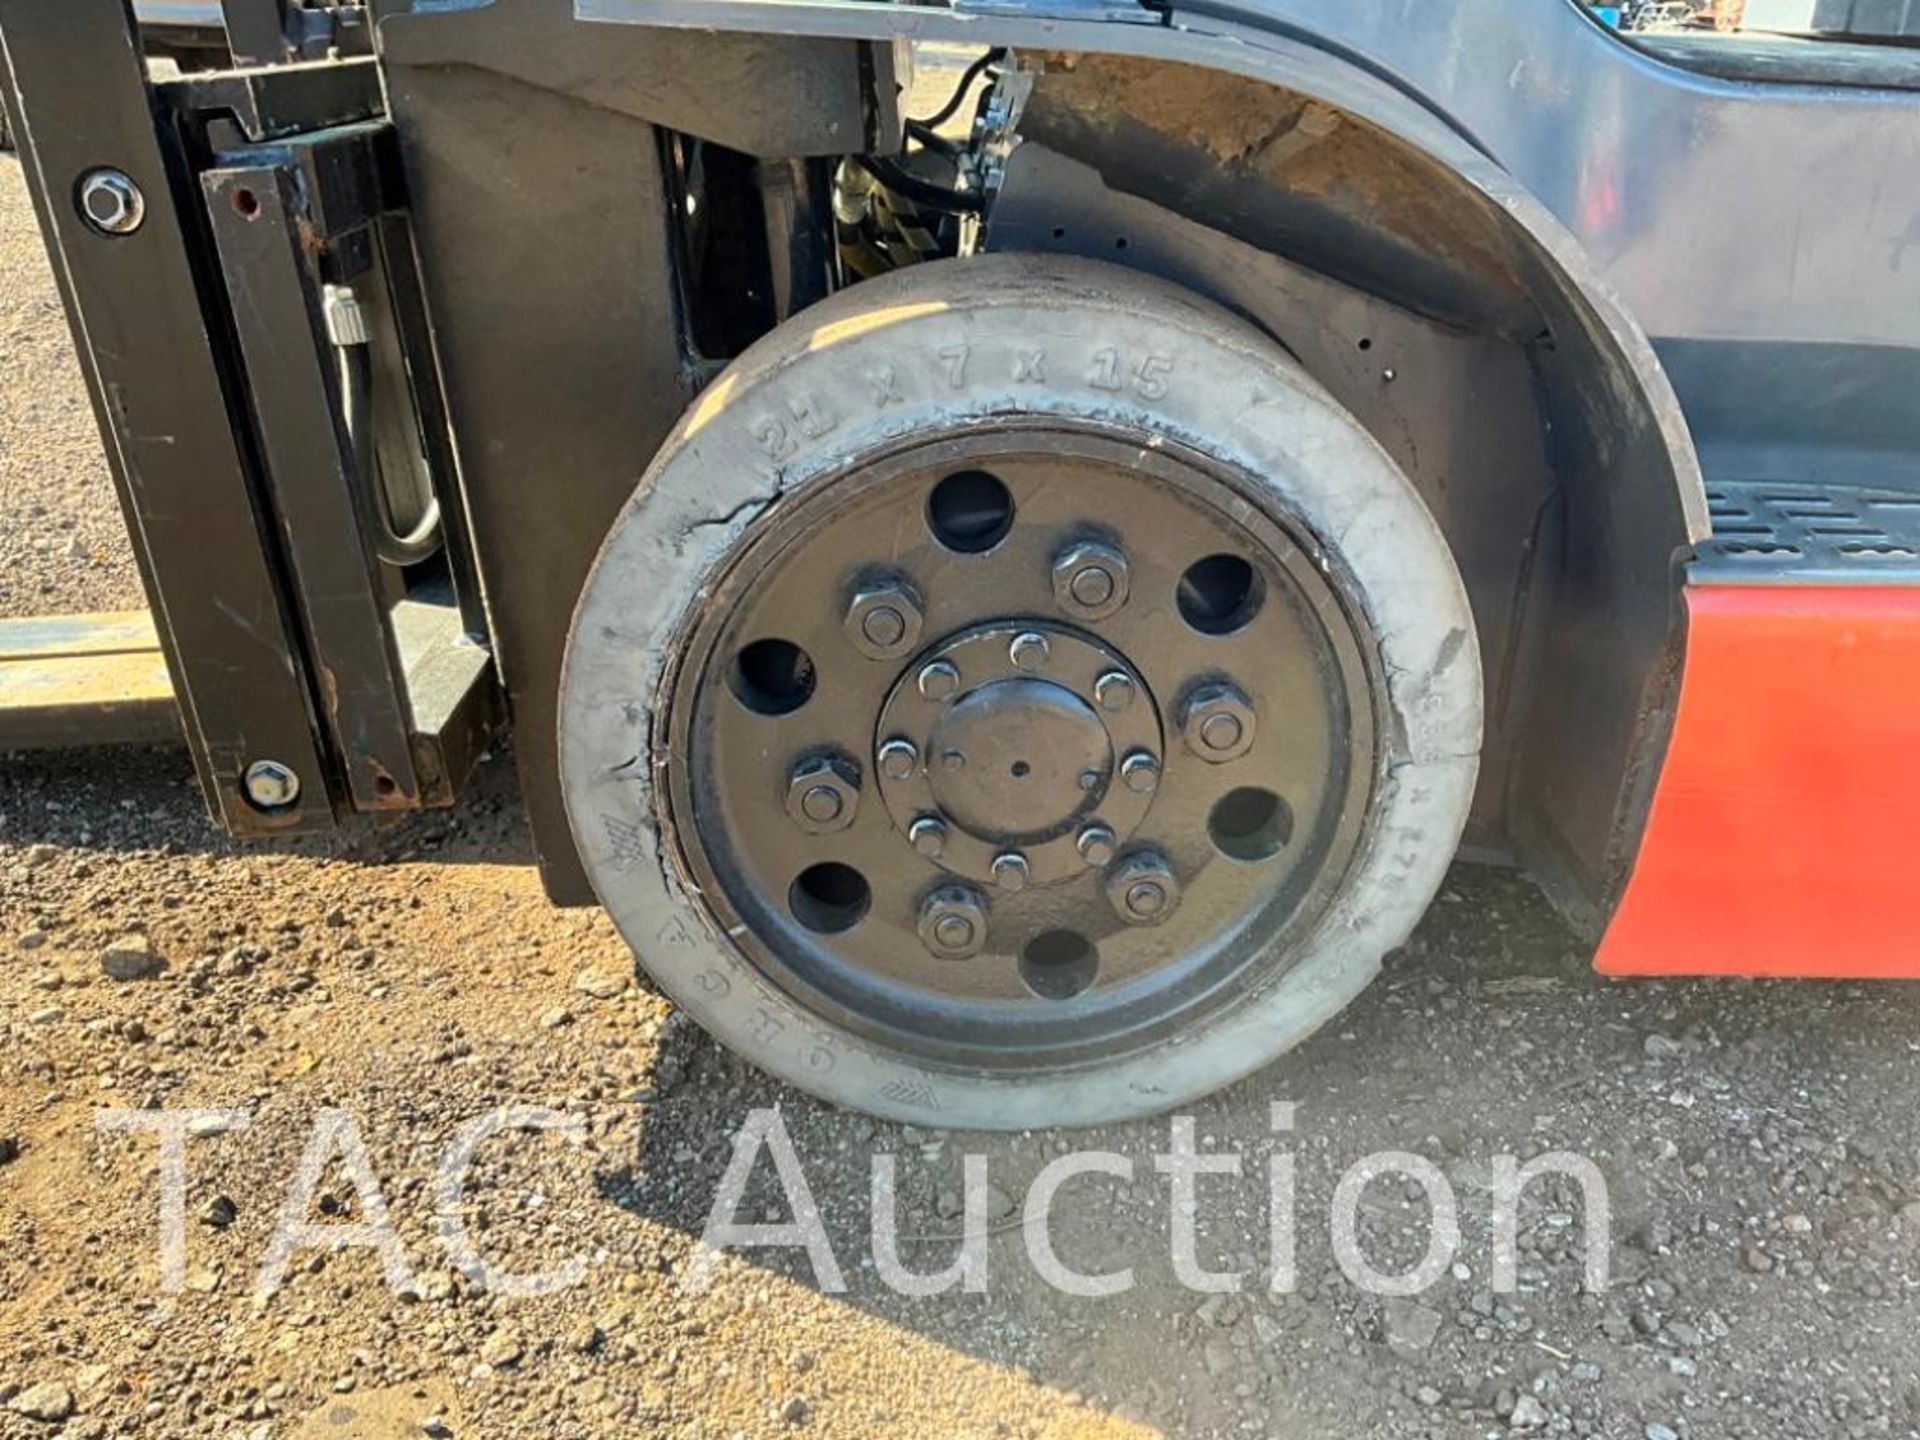 2018 Toyota 8FGCU25 5000lb Forklift - Image 23 of 31